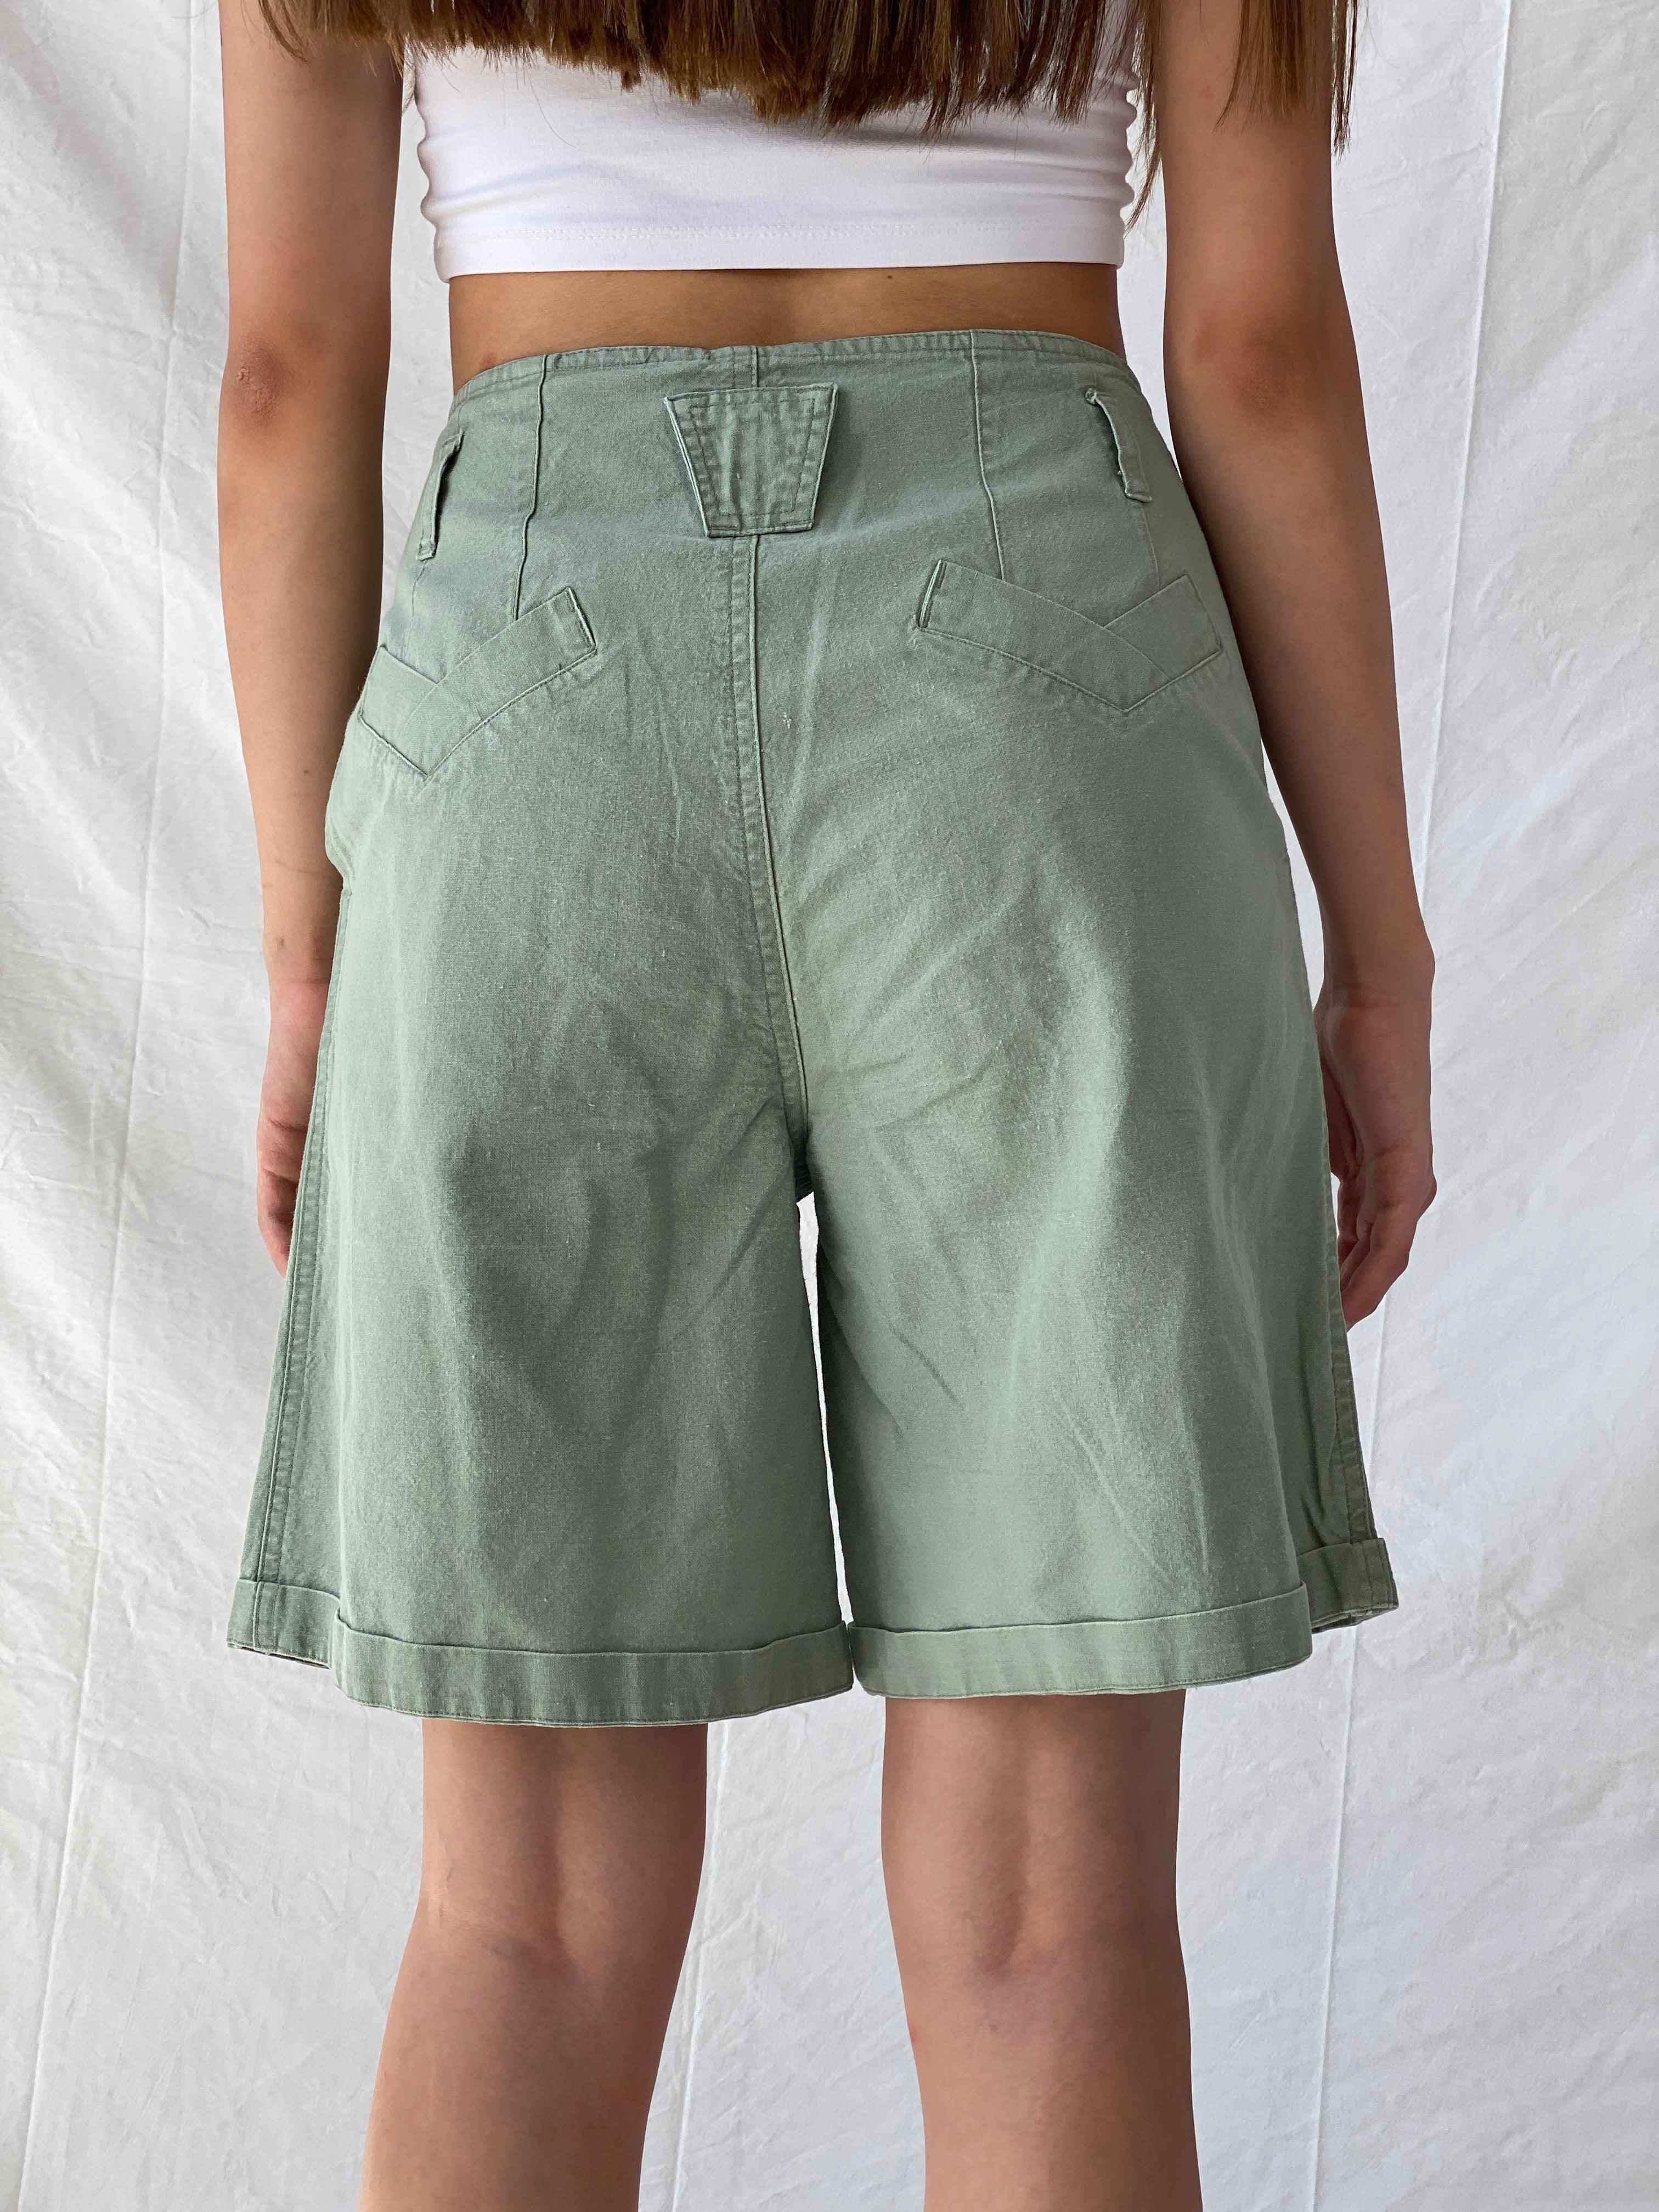 Vintage Baccini Shorts - Balagan Vintage Shorts 00s, 90s, Mira, shorts